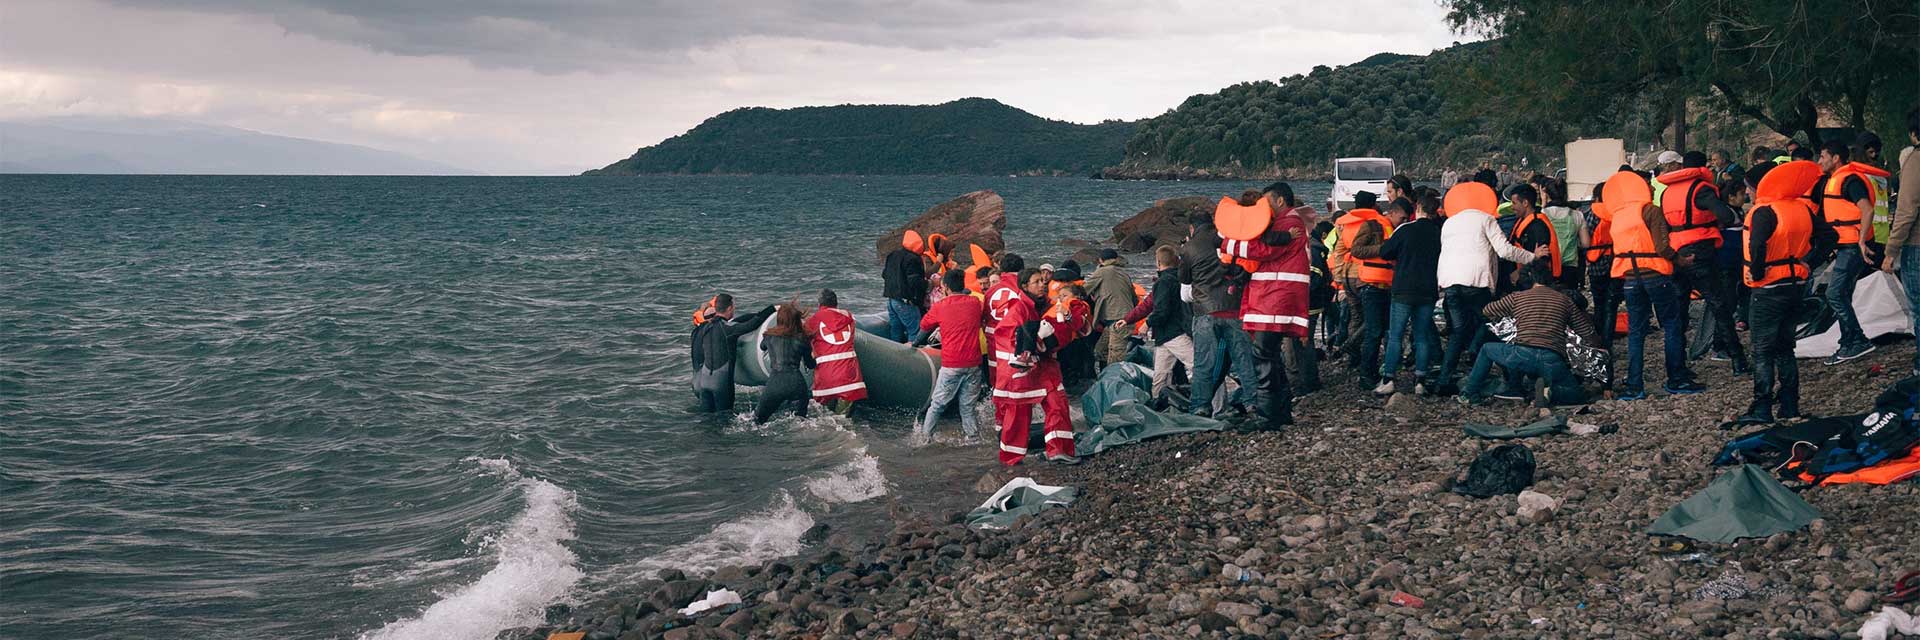 Кораблекрушение у берегов Греции